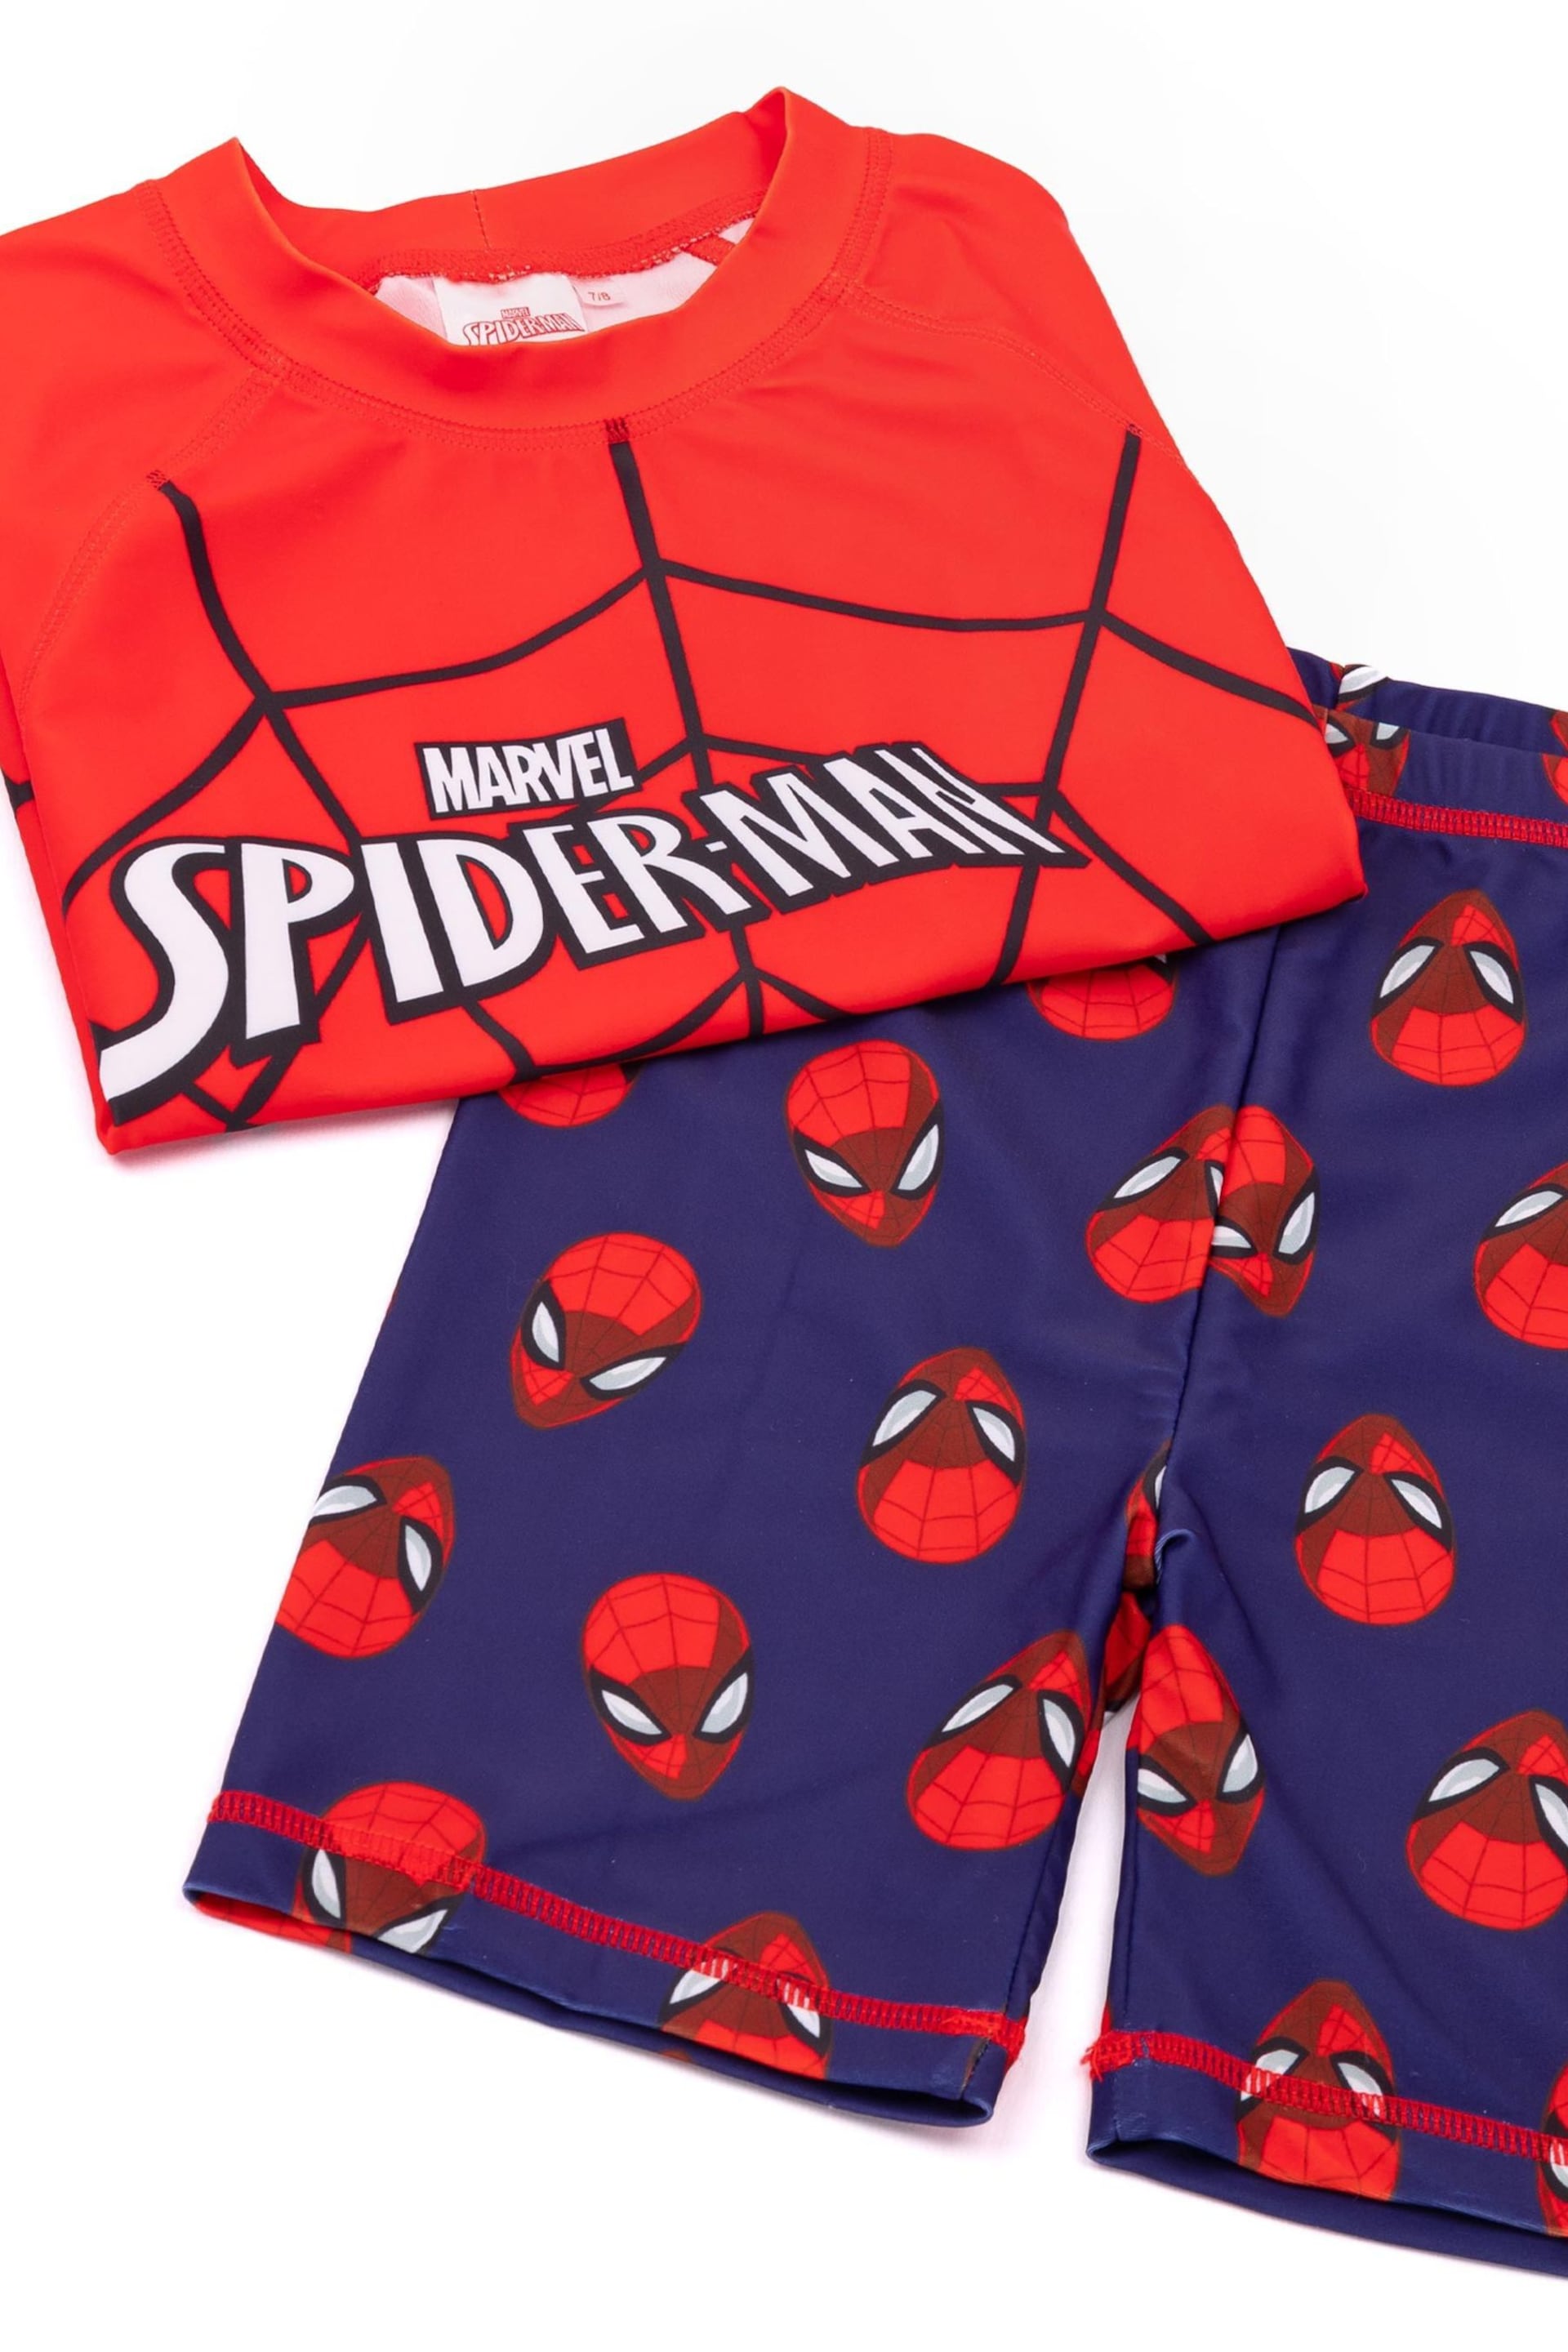 Vanilla Underground Red Spider-Man 2 Piece Swim Set - Image 3 of 5